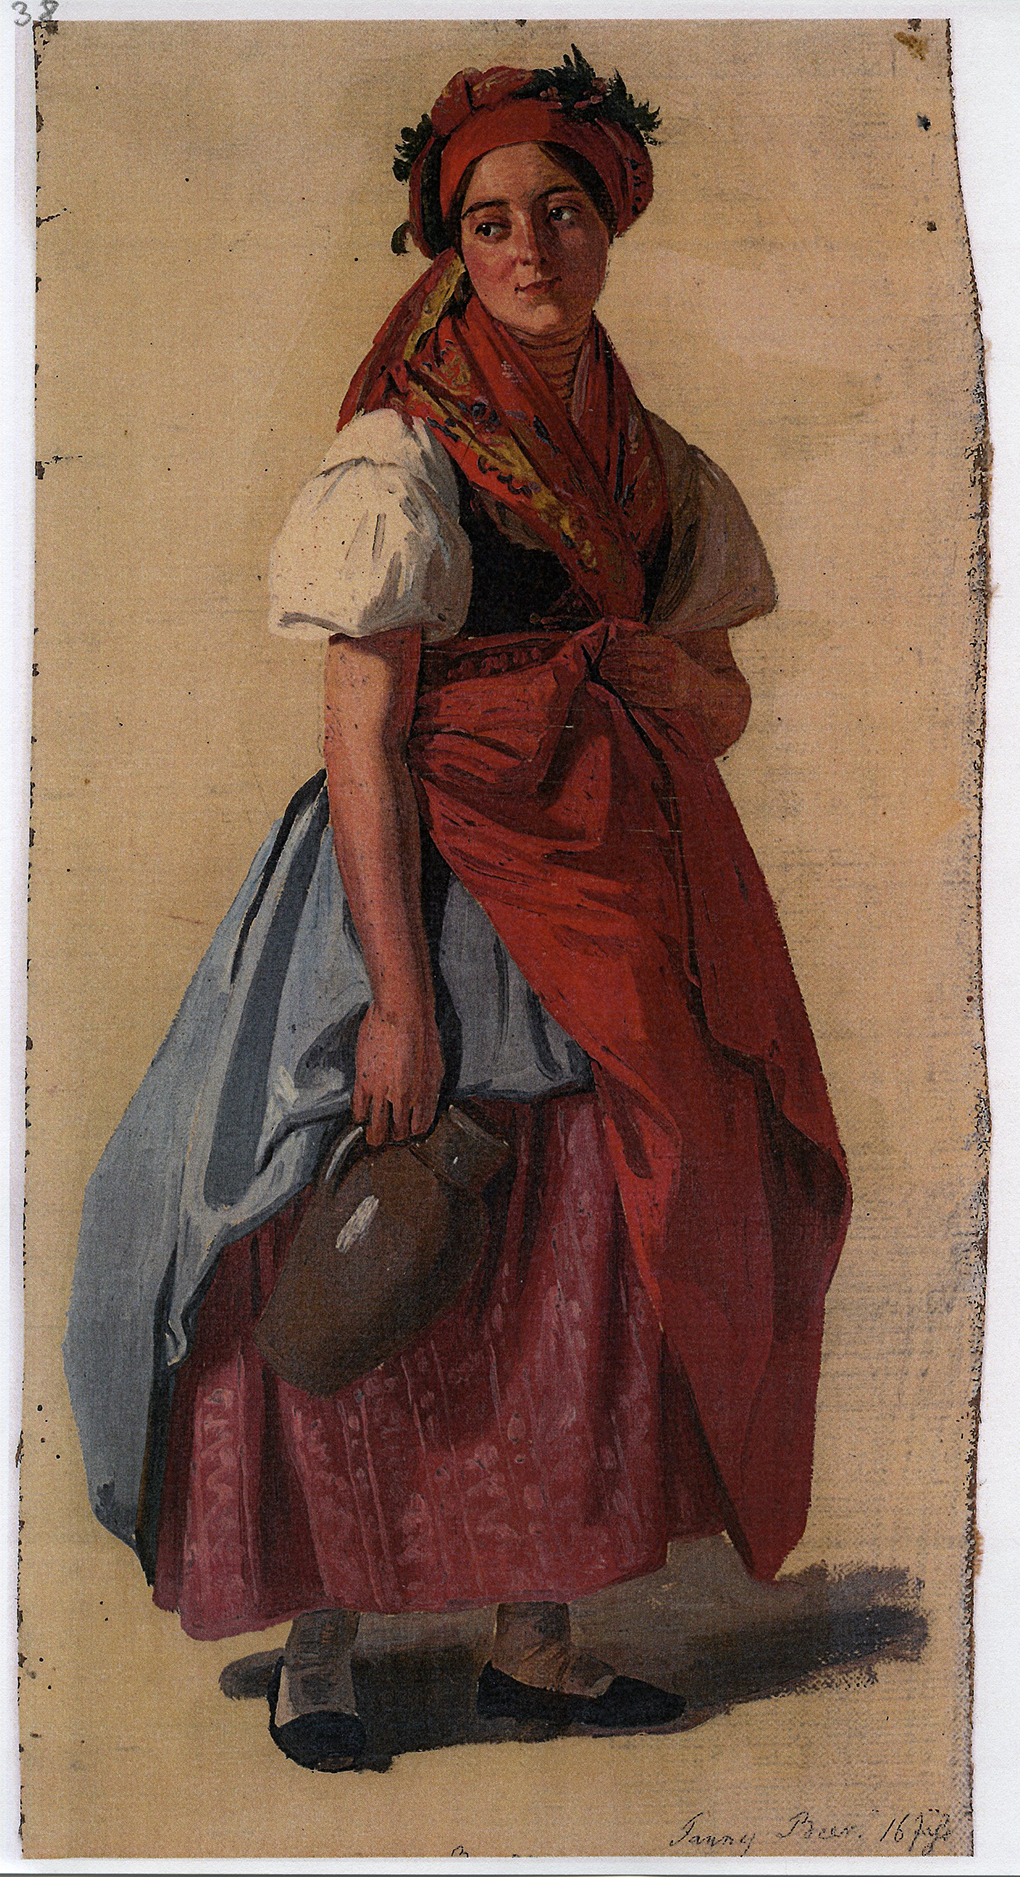 Ludwig Most, Portret Fanny Beer, studium do obrazu, olej na płótnie, 1851, Muzeum Narodowe w Szczecinie